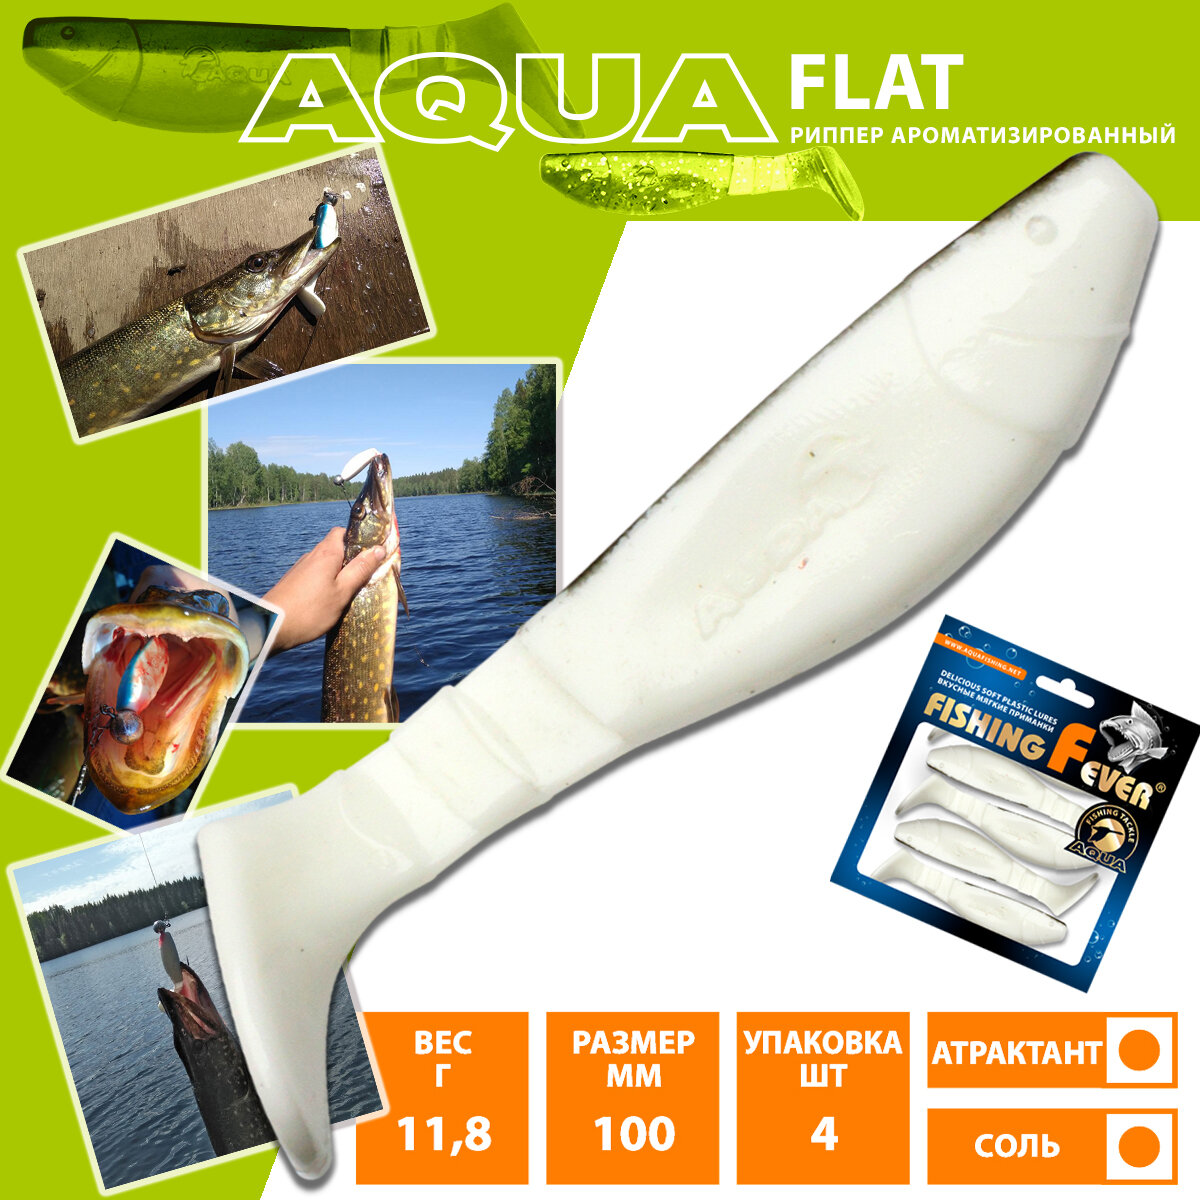 Силиконовая приманка AQUA FishingFever Flat 10cm 11.8g цвет WB 4шт риппер для рыбалки